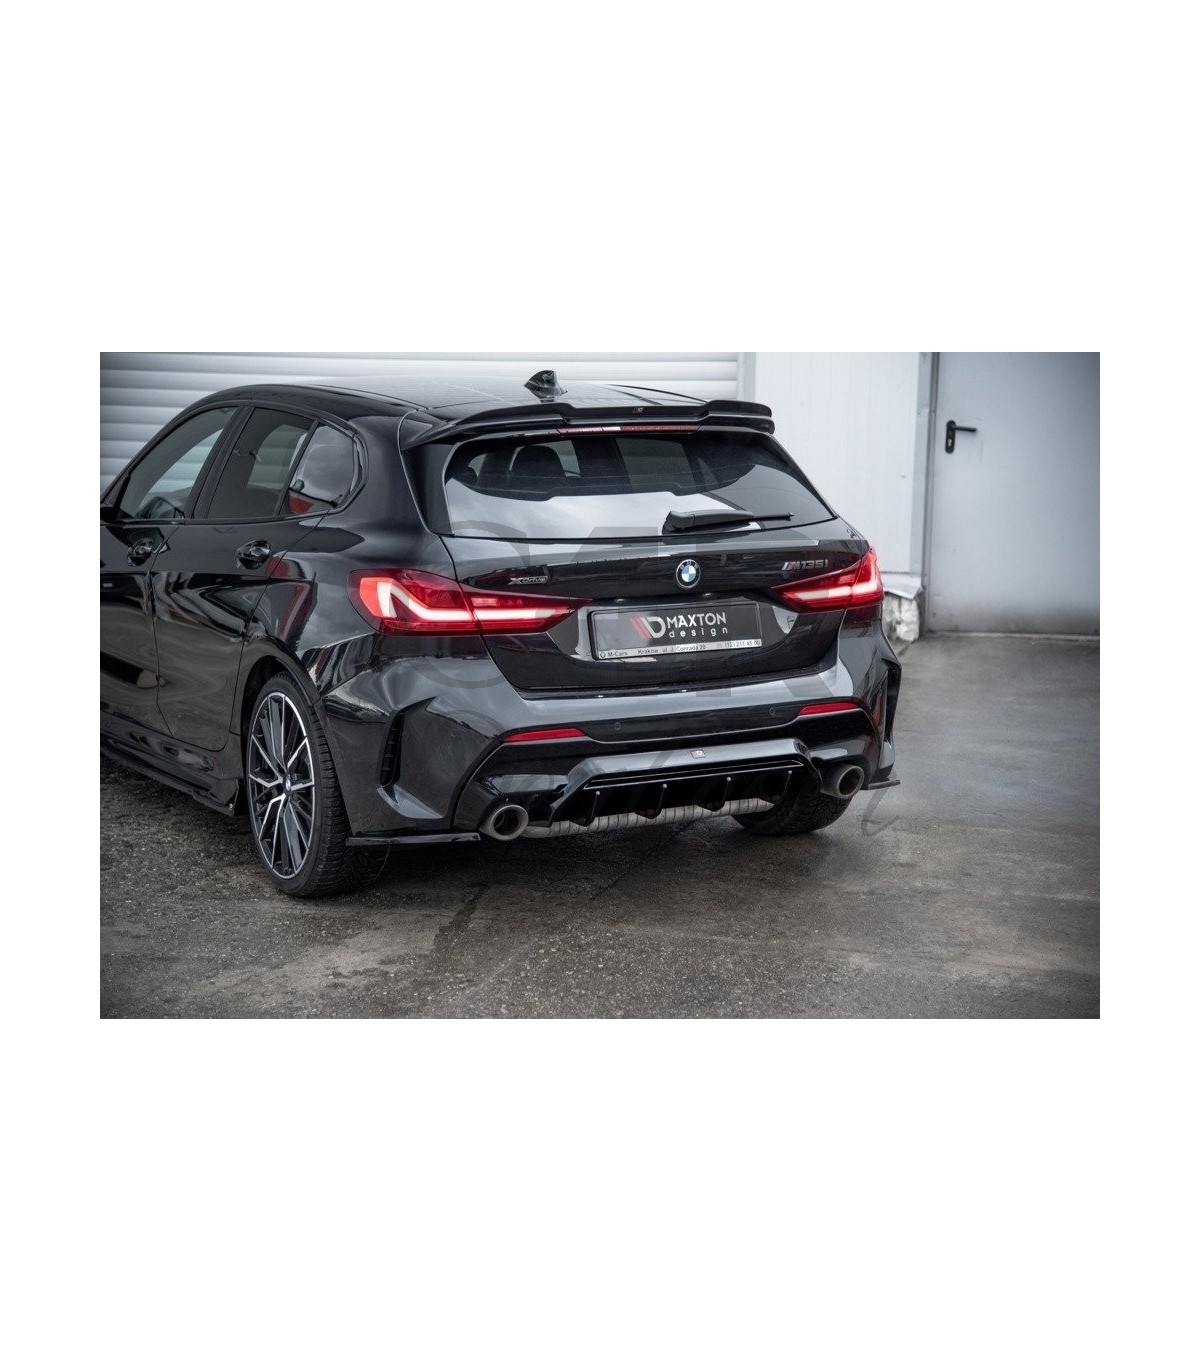 Lame avant M Performance en noir brillant pour BMW Série 1 F40